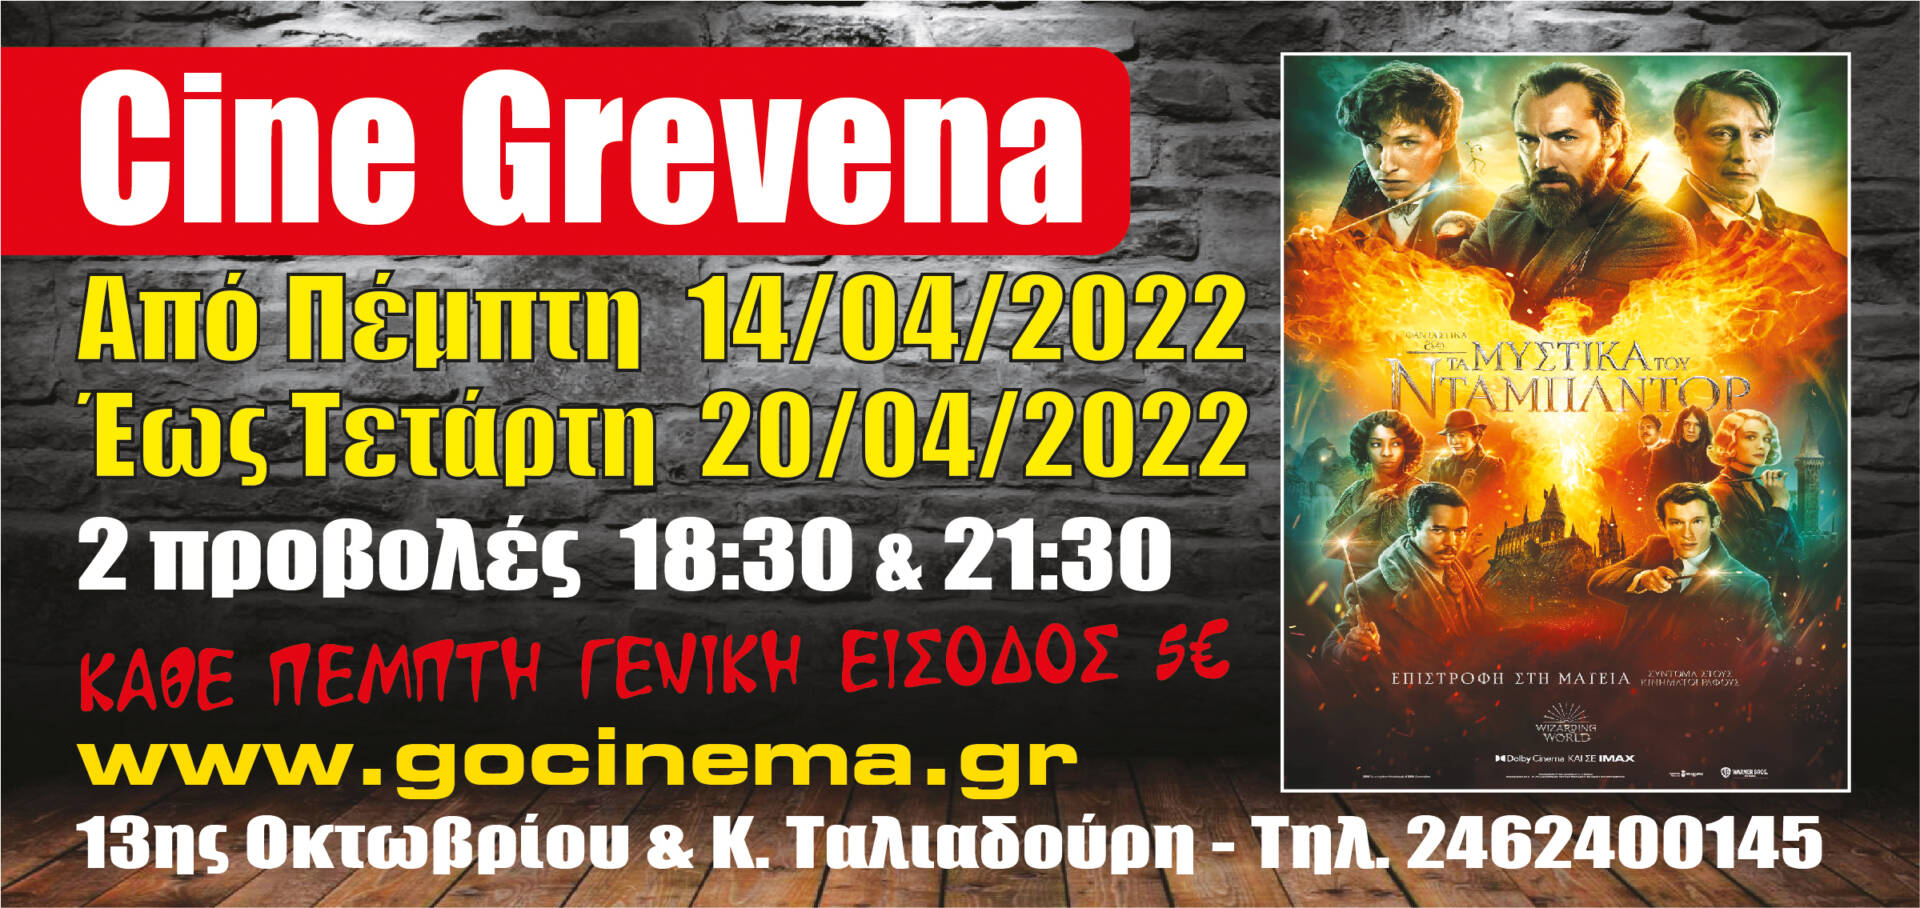 Νέα κινηματογραφική εβδομάδα στο Cine Grevena- Το πρόγραμμα προβολών